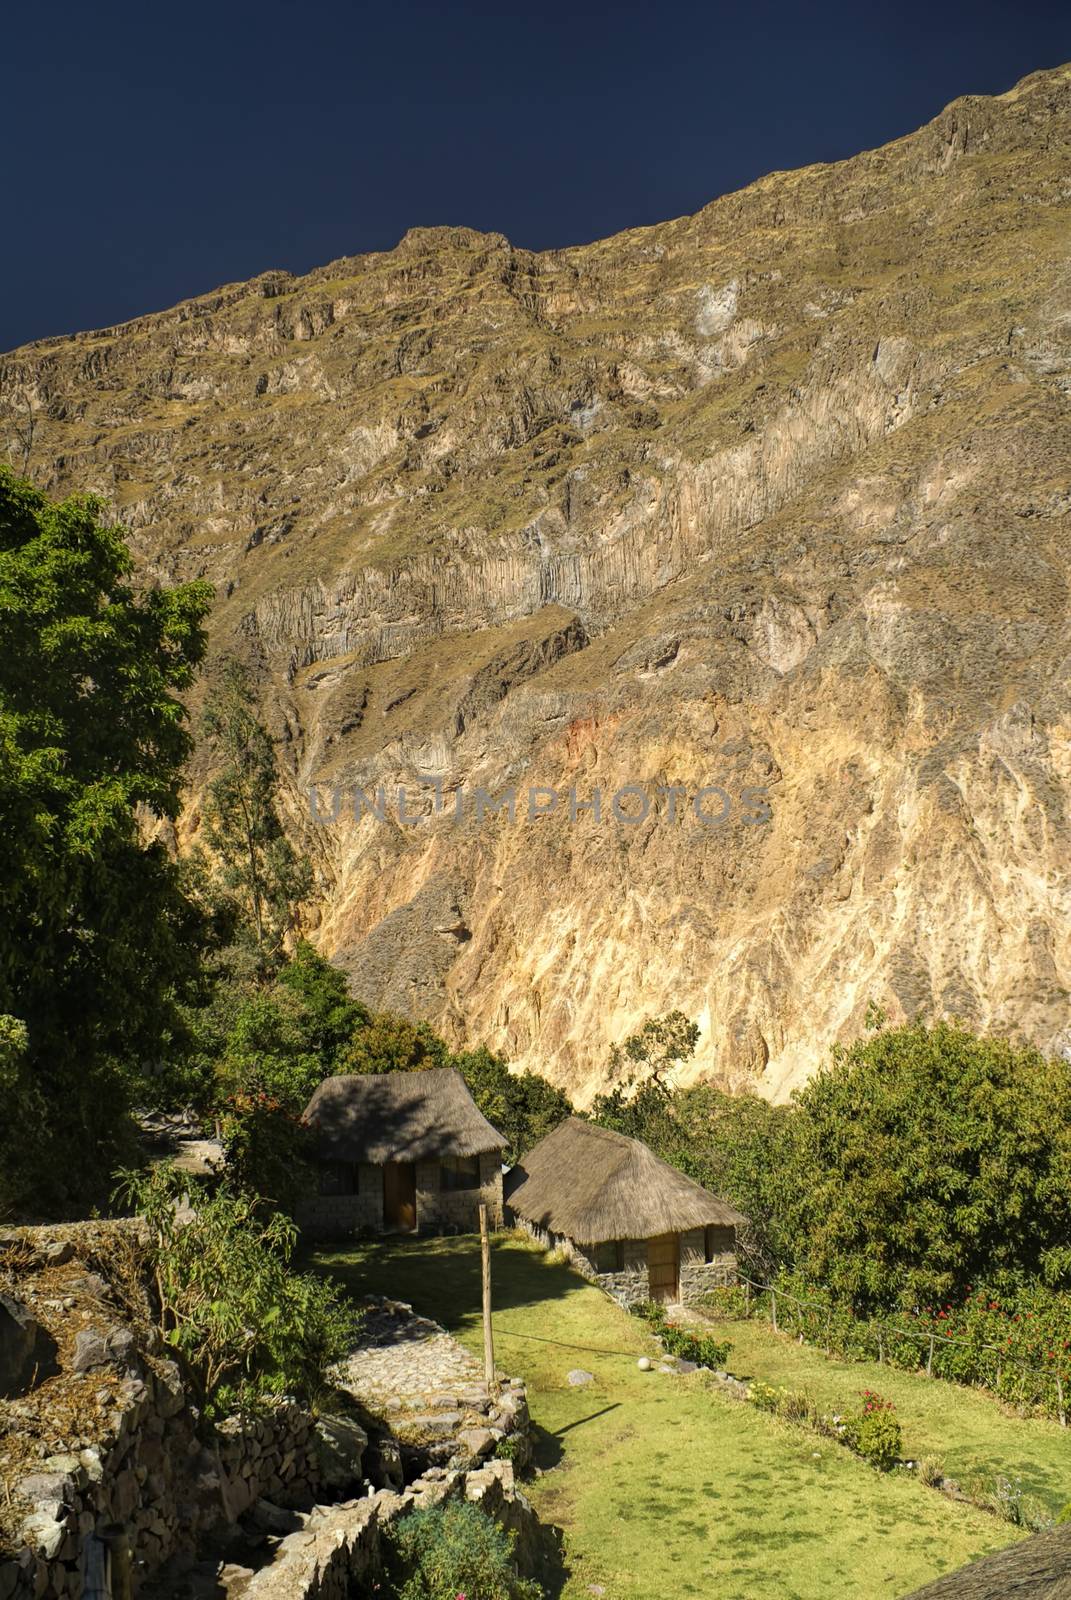 Small farmhouse near Canon del Colca, famous tourist destination in Peru